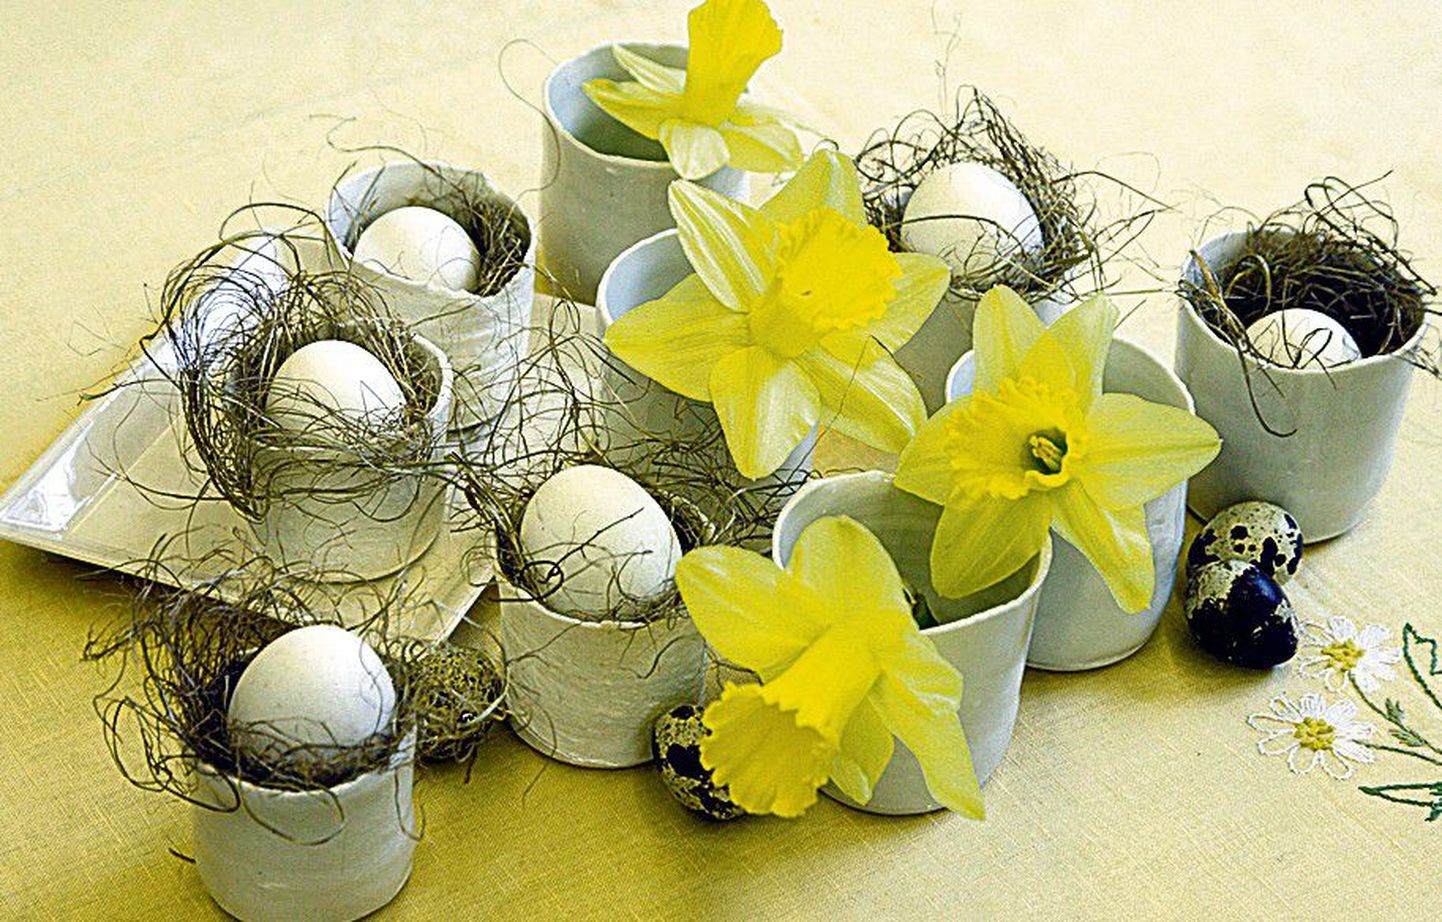 Käepärasest materjalist: keraamik Margot Maldi küünlaalustesse paigutatud munad ja nartsissid kannavad endas pühadetunnet.